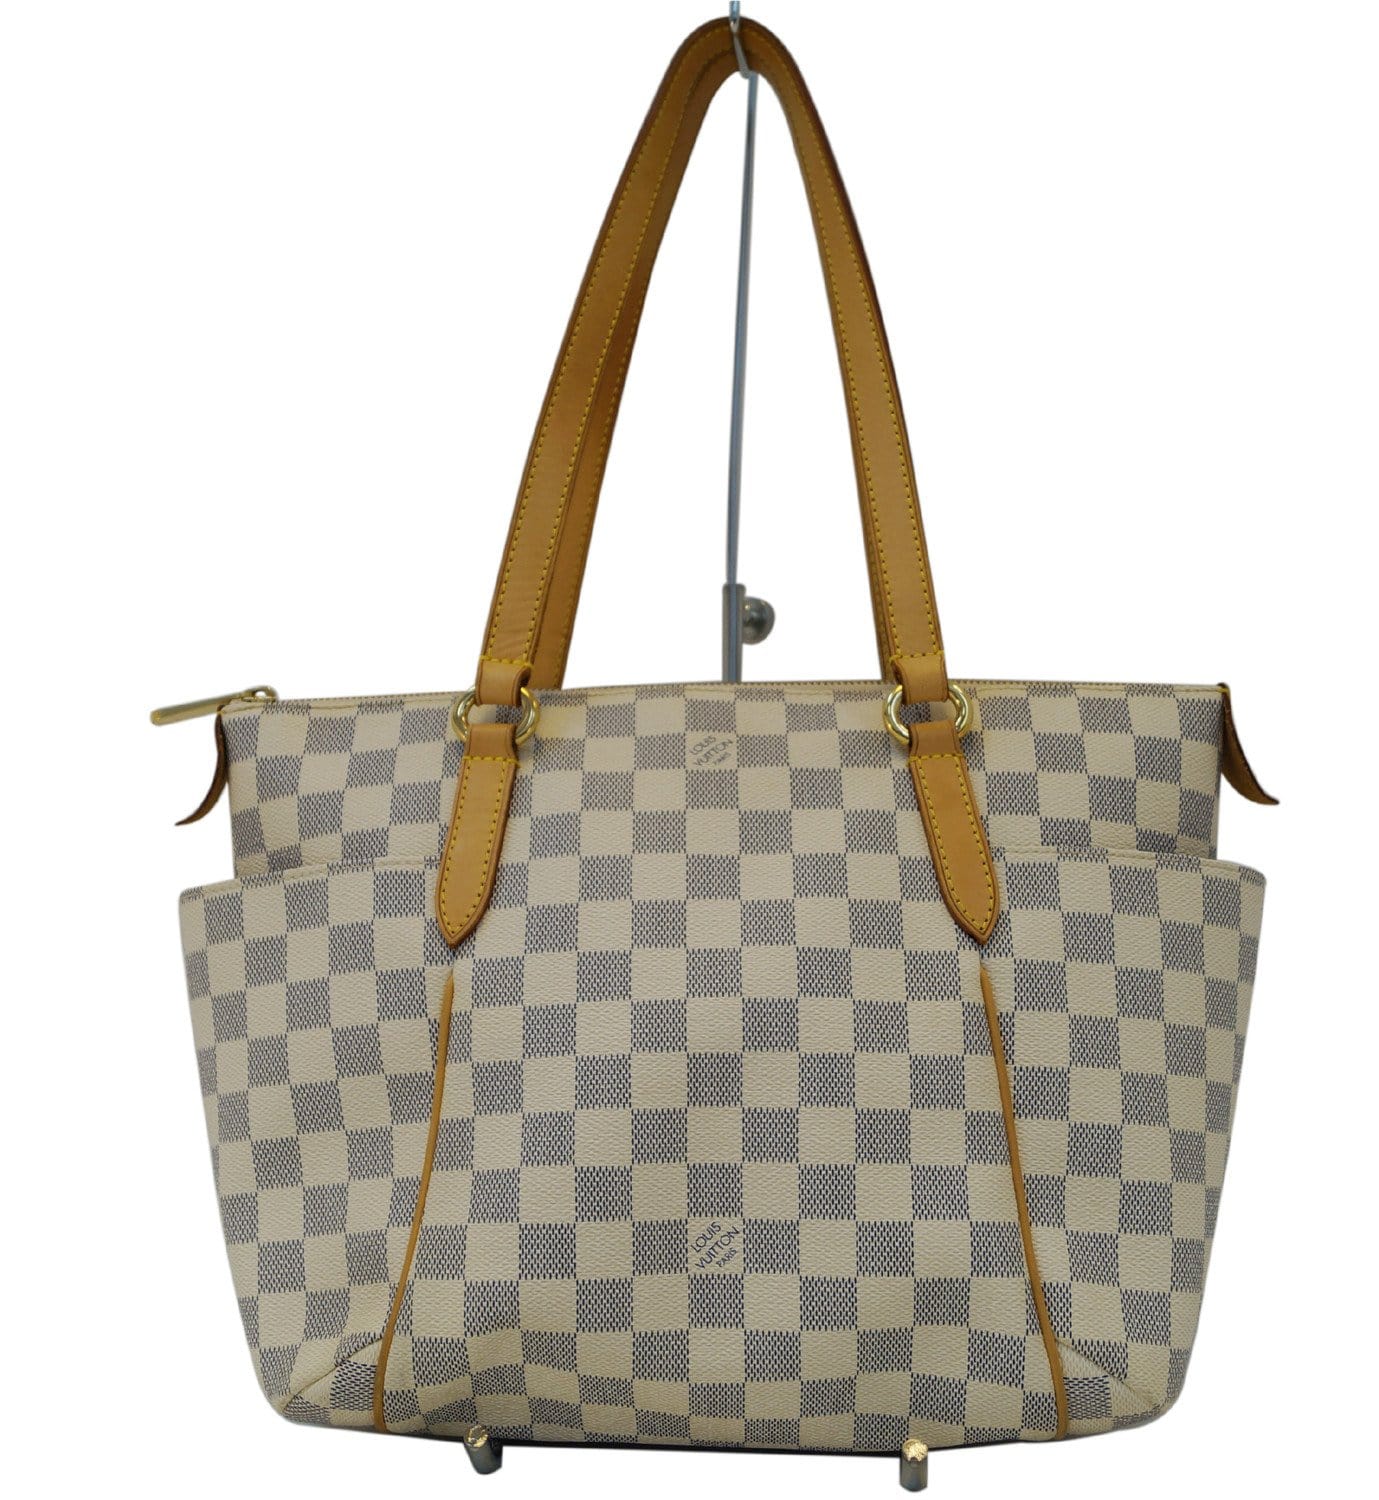 Louis Vuitton handbag authentic Damier Azur great condition